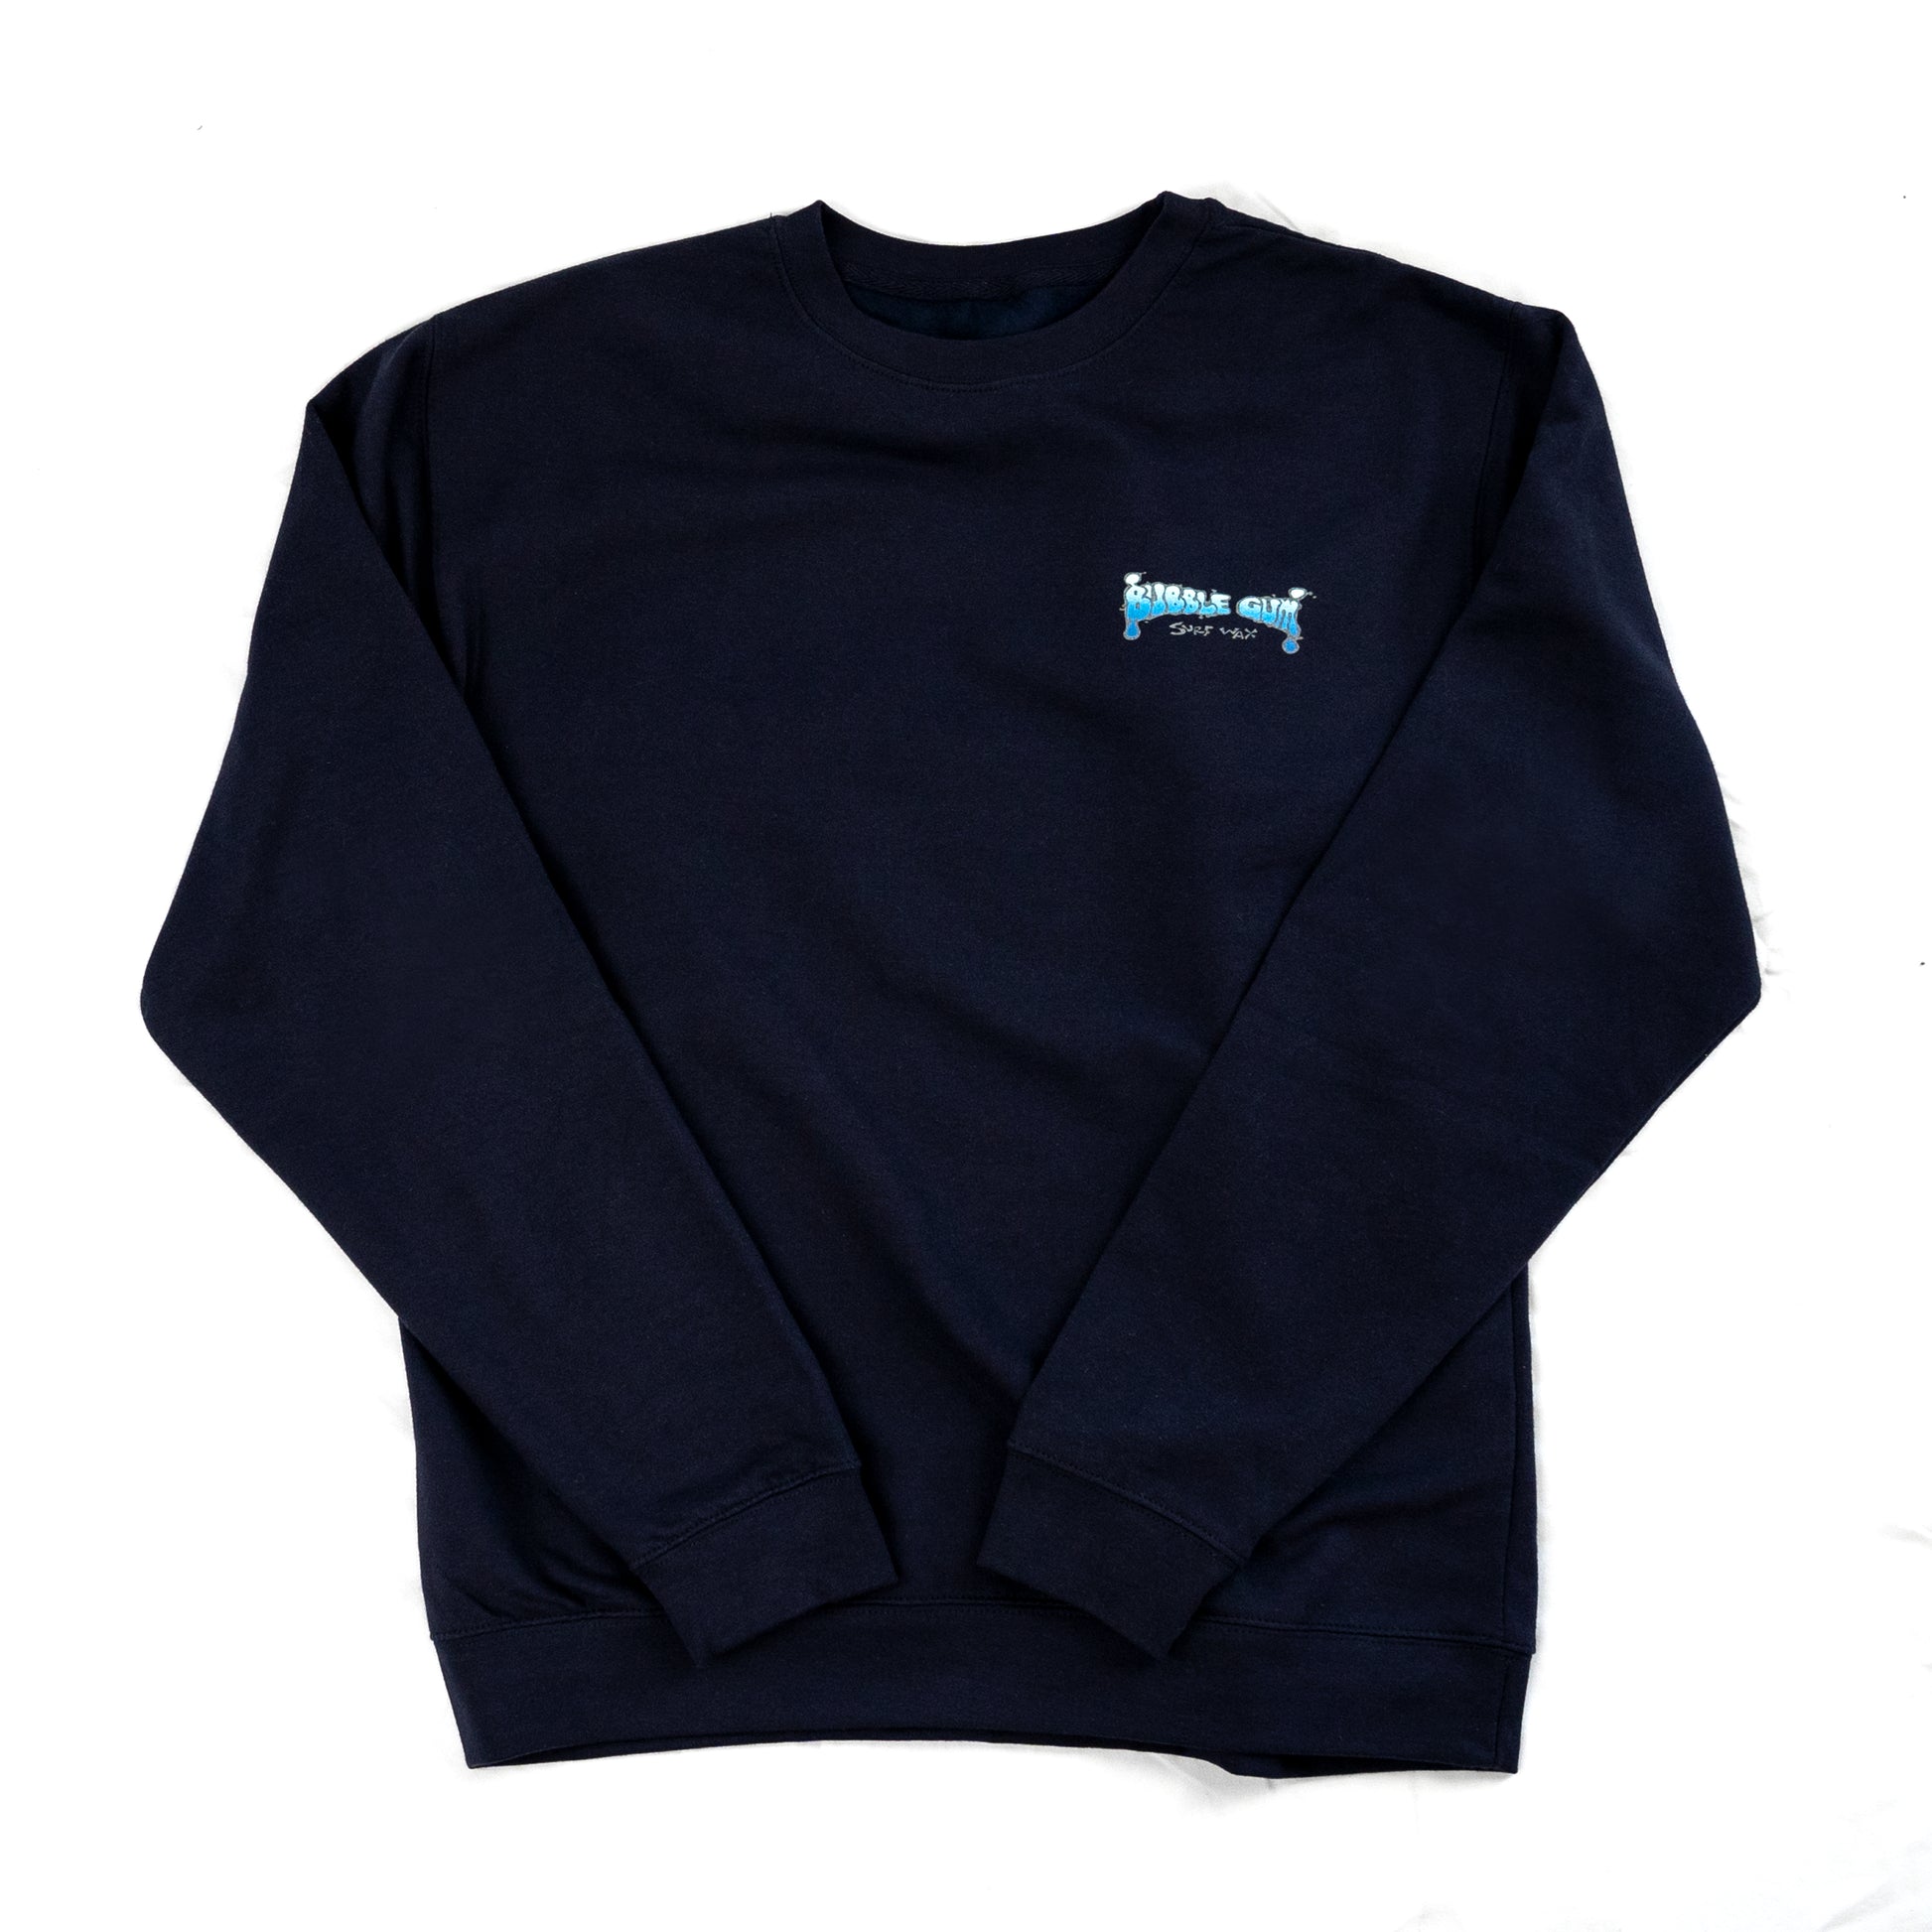 Blue Gradient Navy Crewneck Sweatshirt